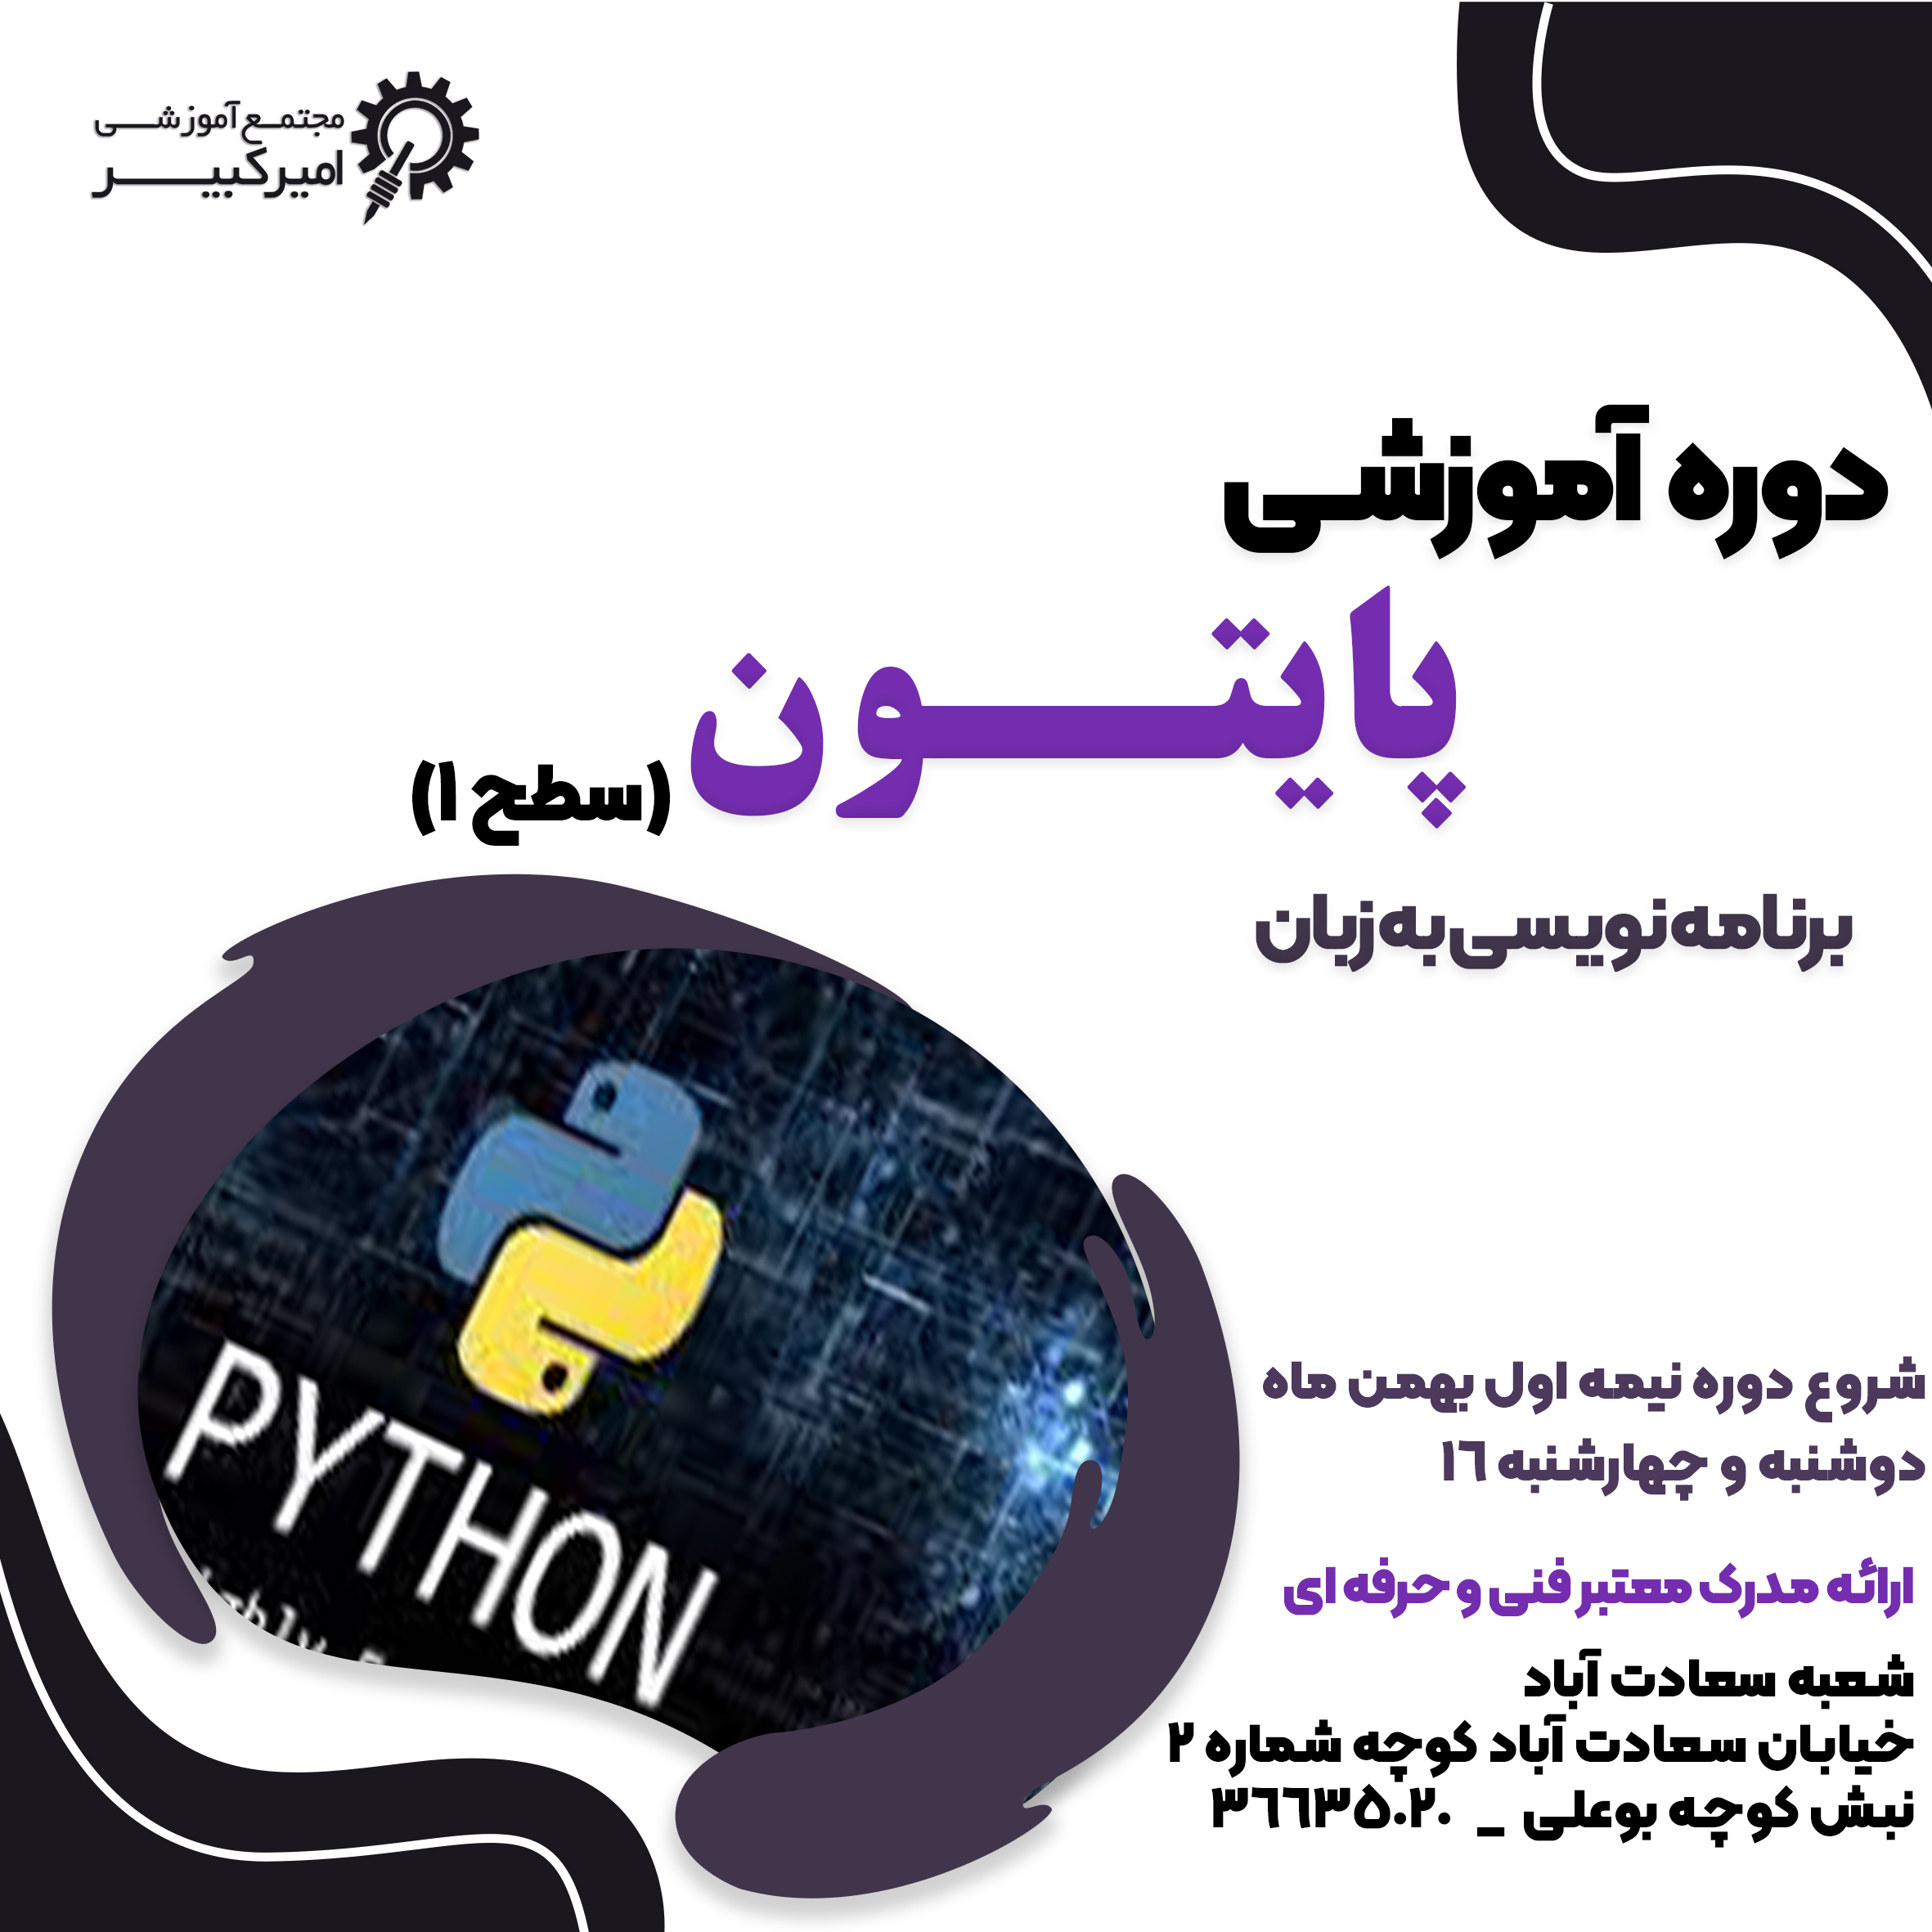 برنامه نویسی به زبان Python